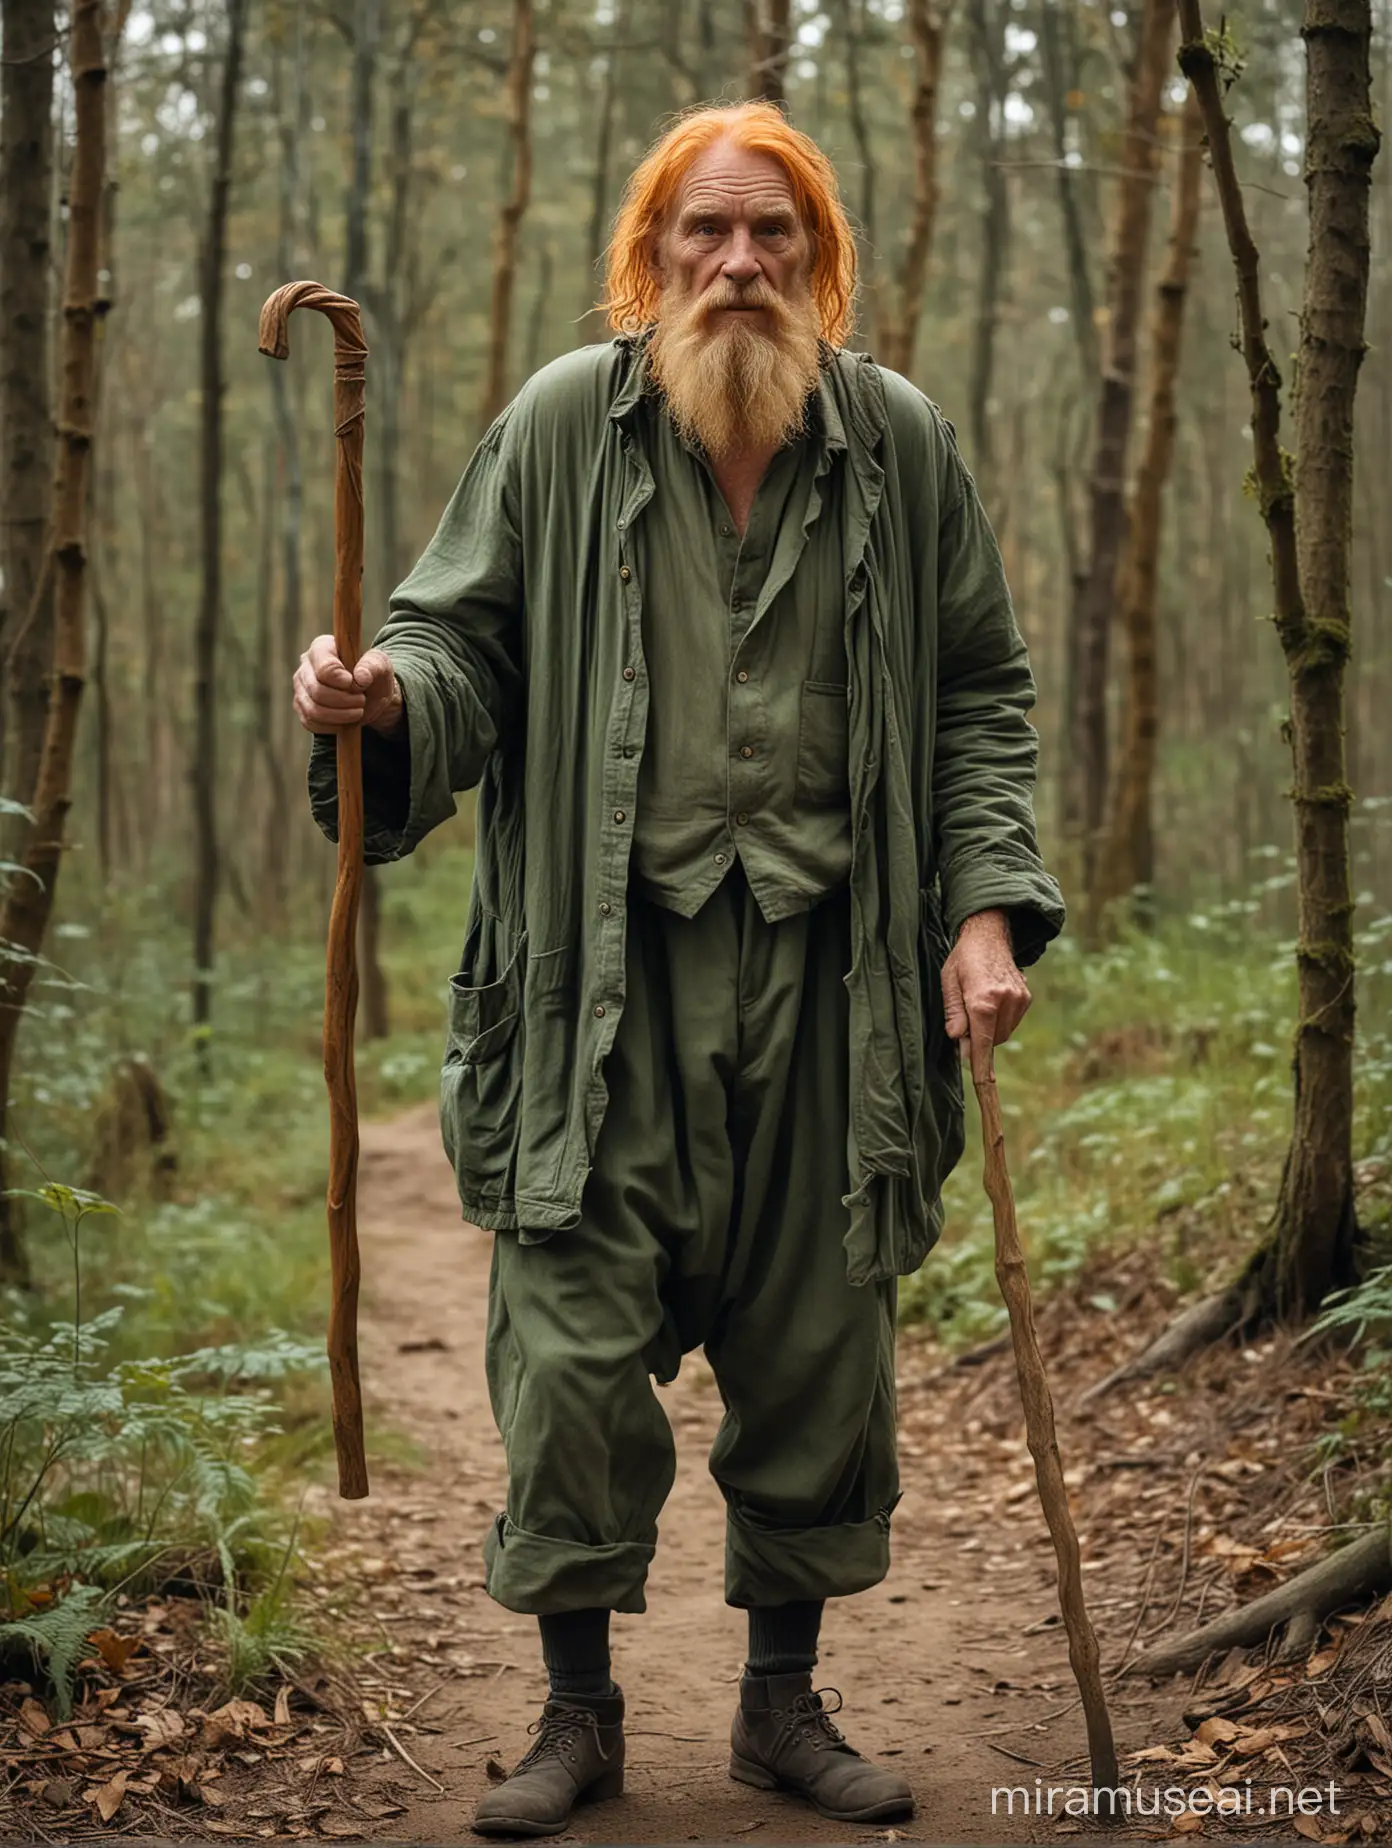 Elderly Hermit with Orange Hair and Green Attire in Forest